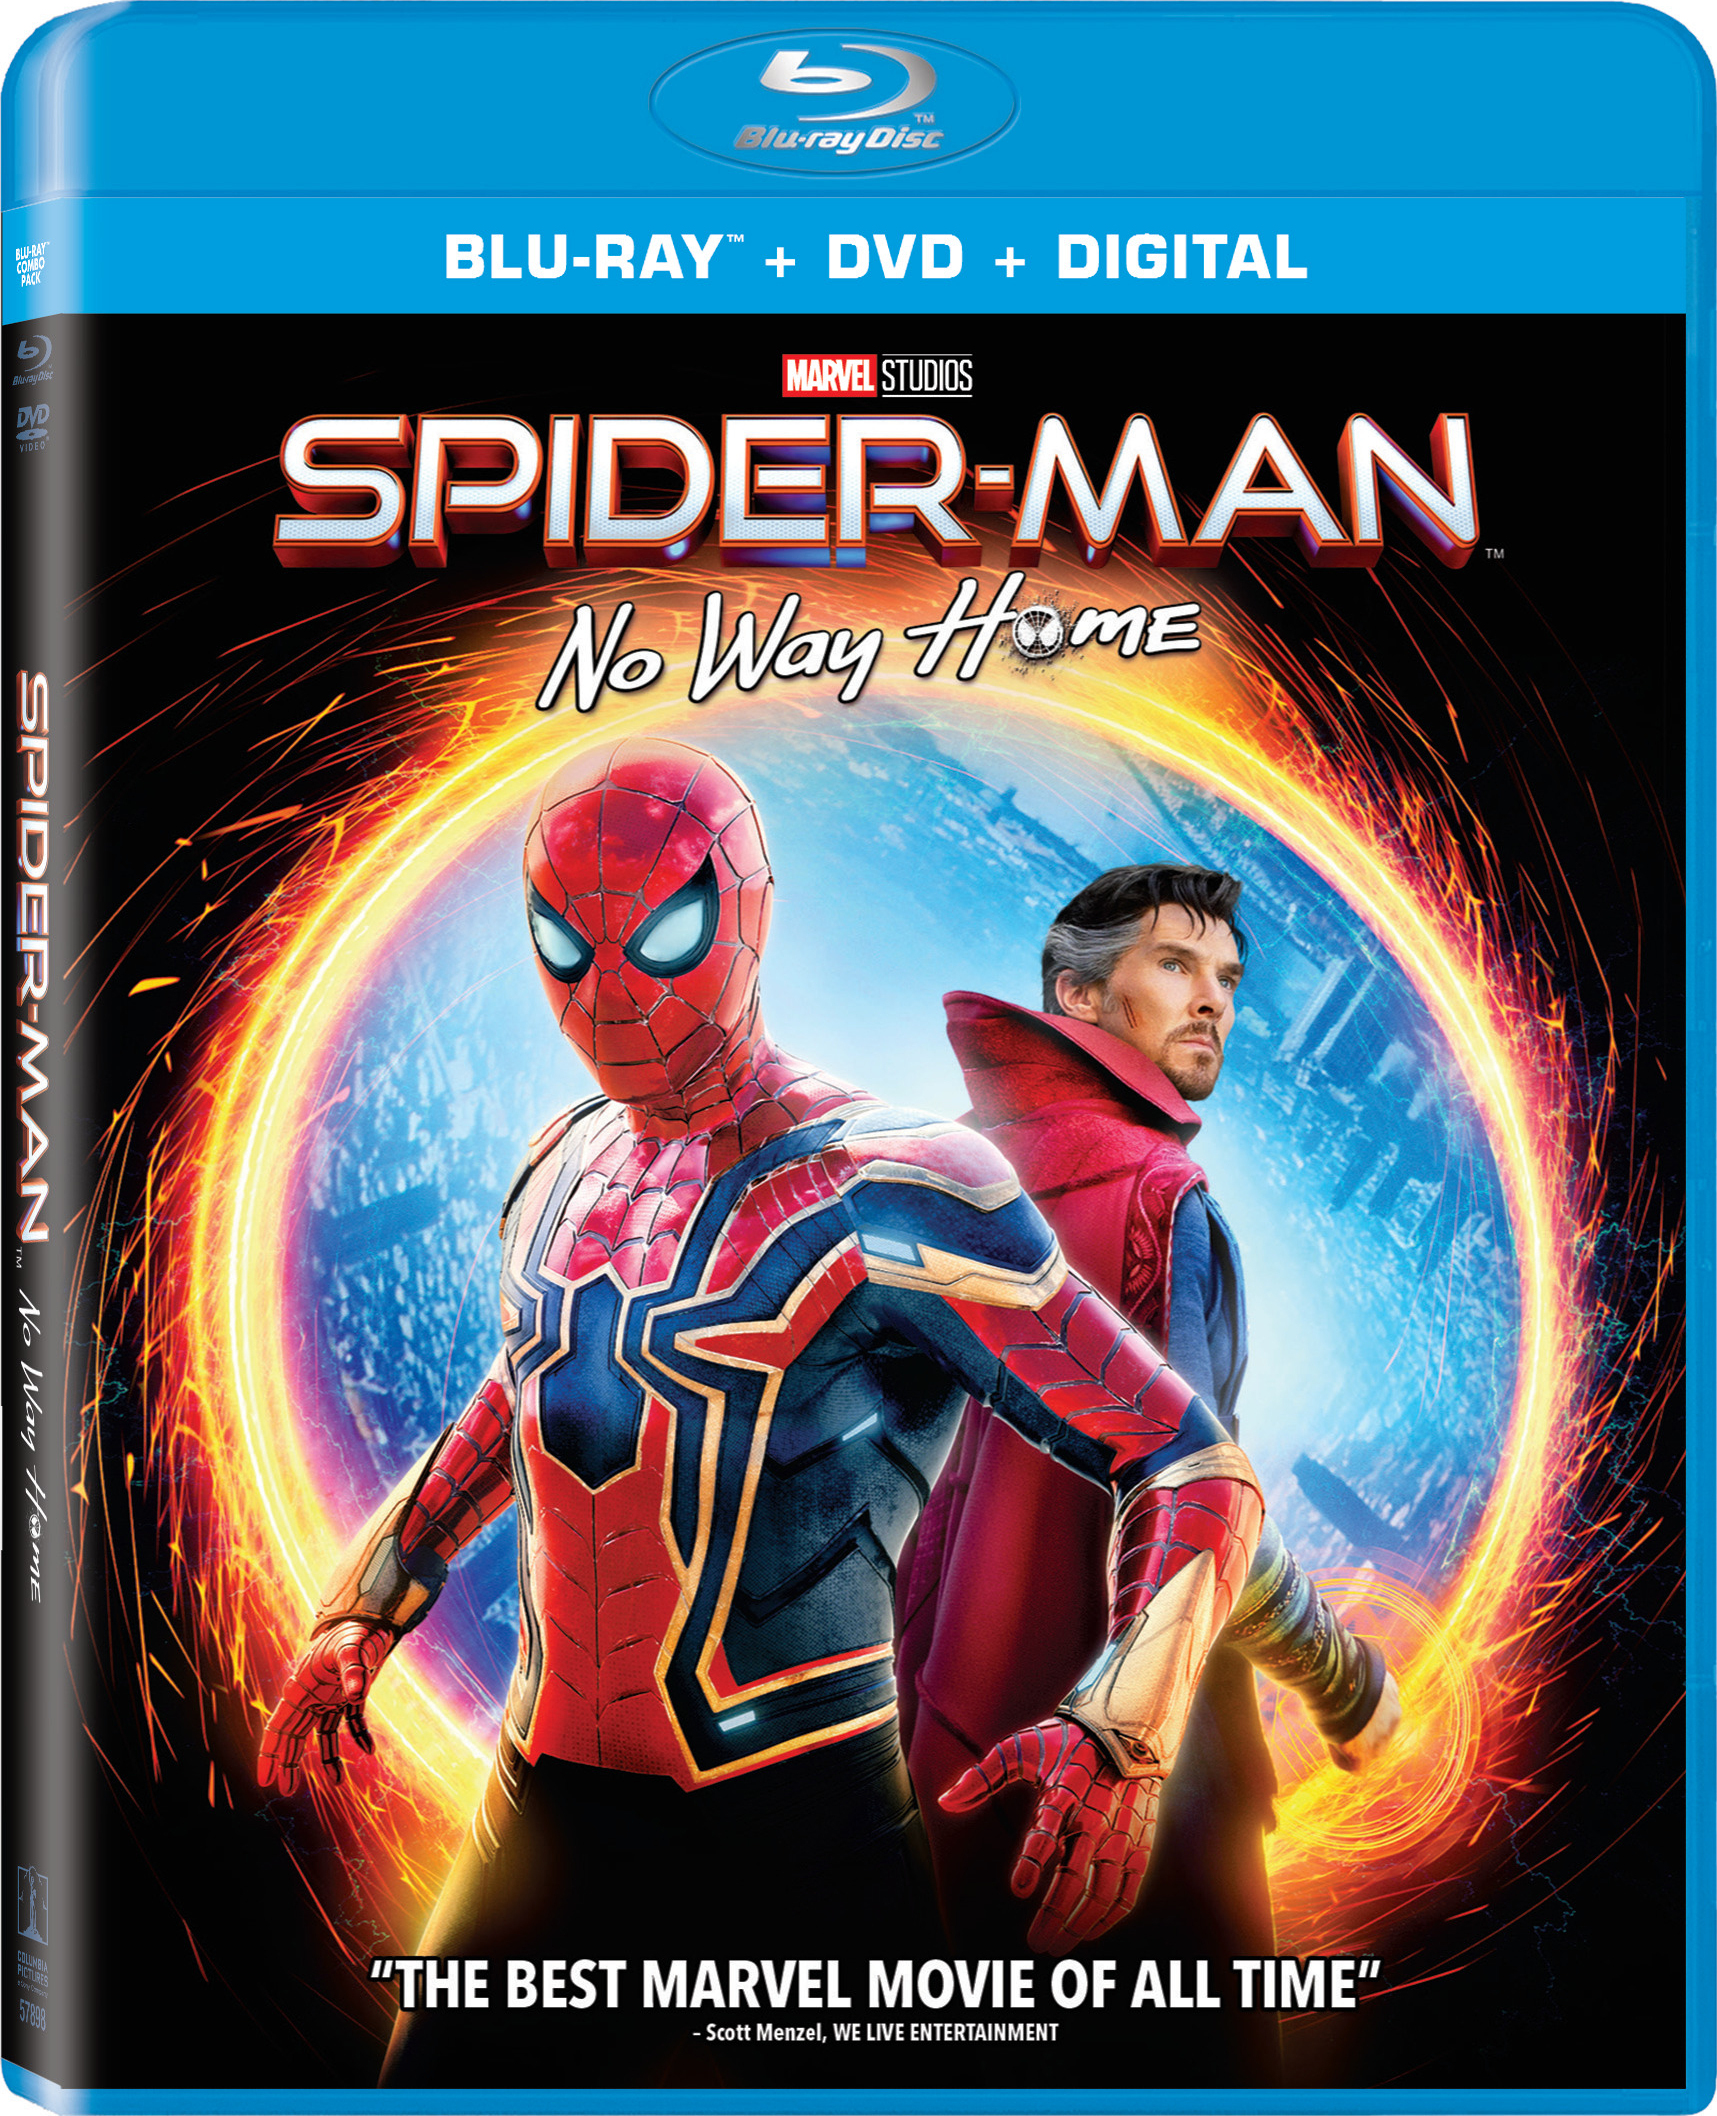 Spider-Man: No Way Home (2021) HDRip English Movie Watch Online Free